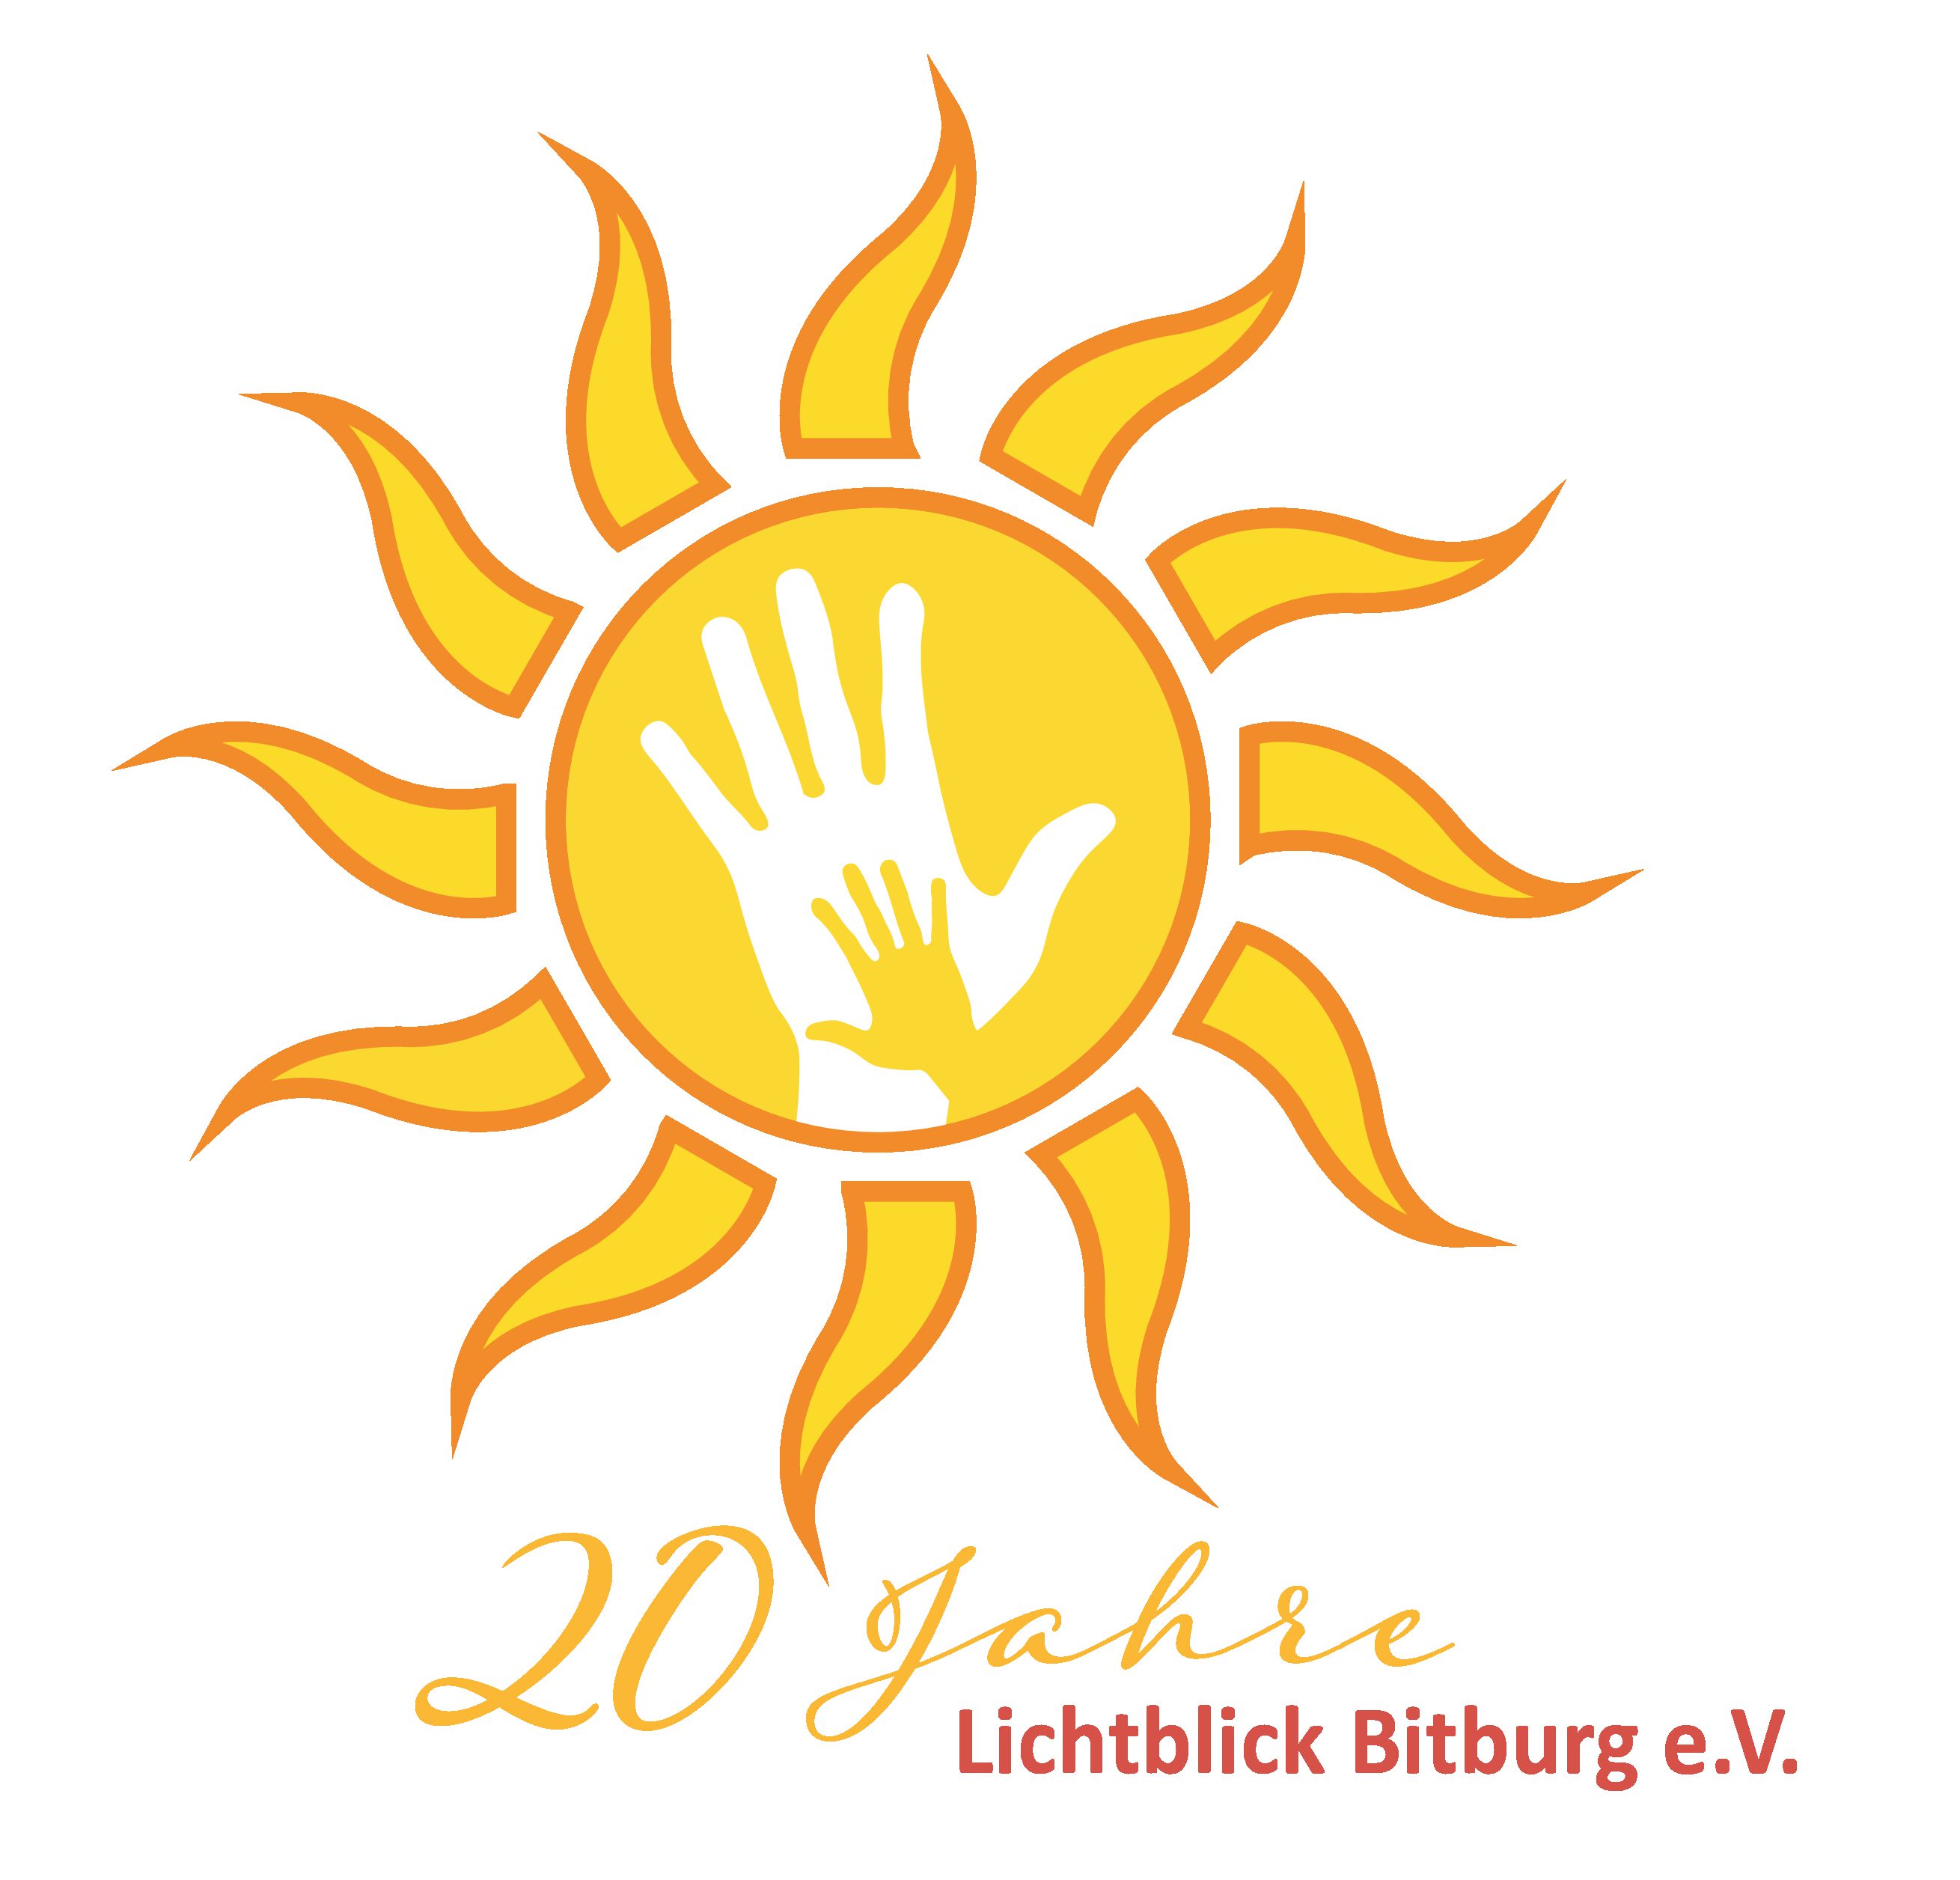 Lichtblick Bitburg e.V. wird 20 Jahre und feiert!